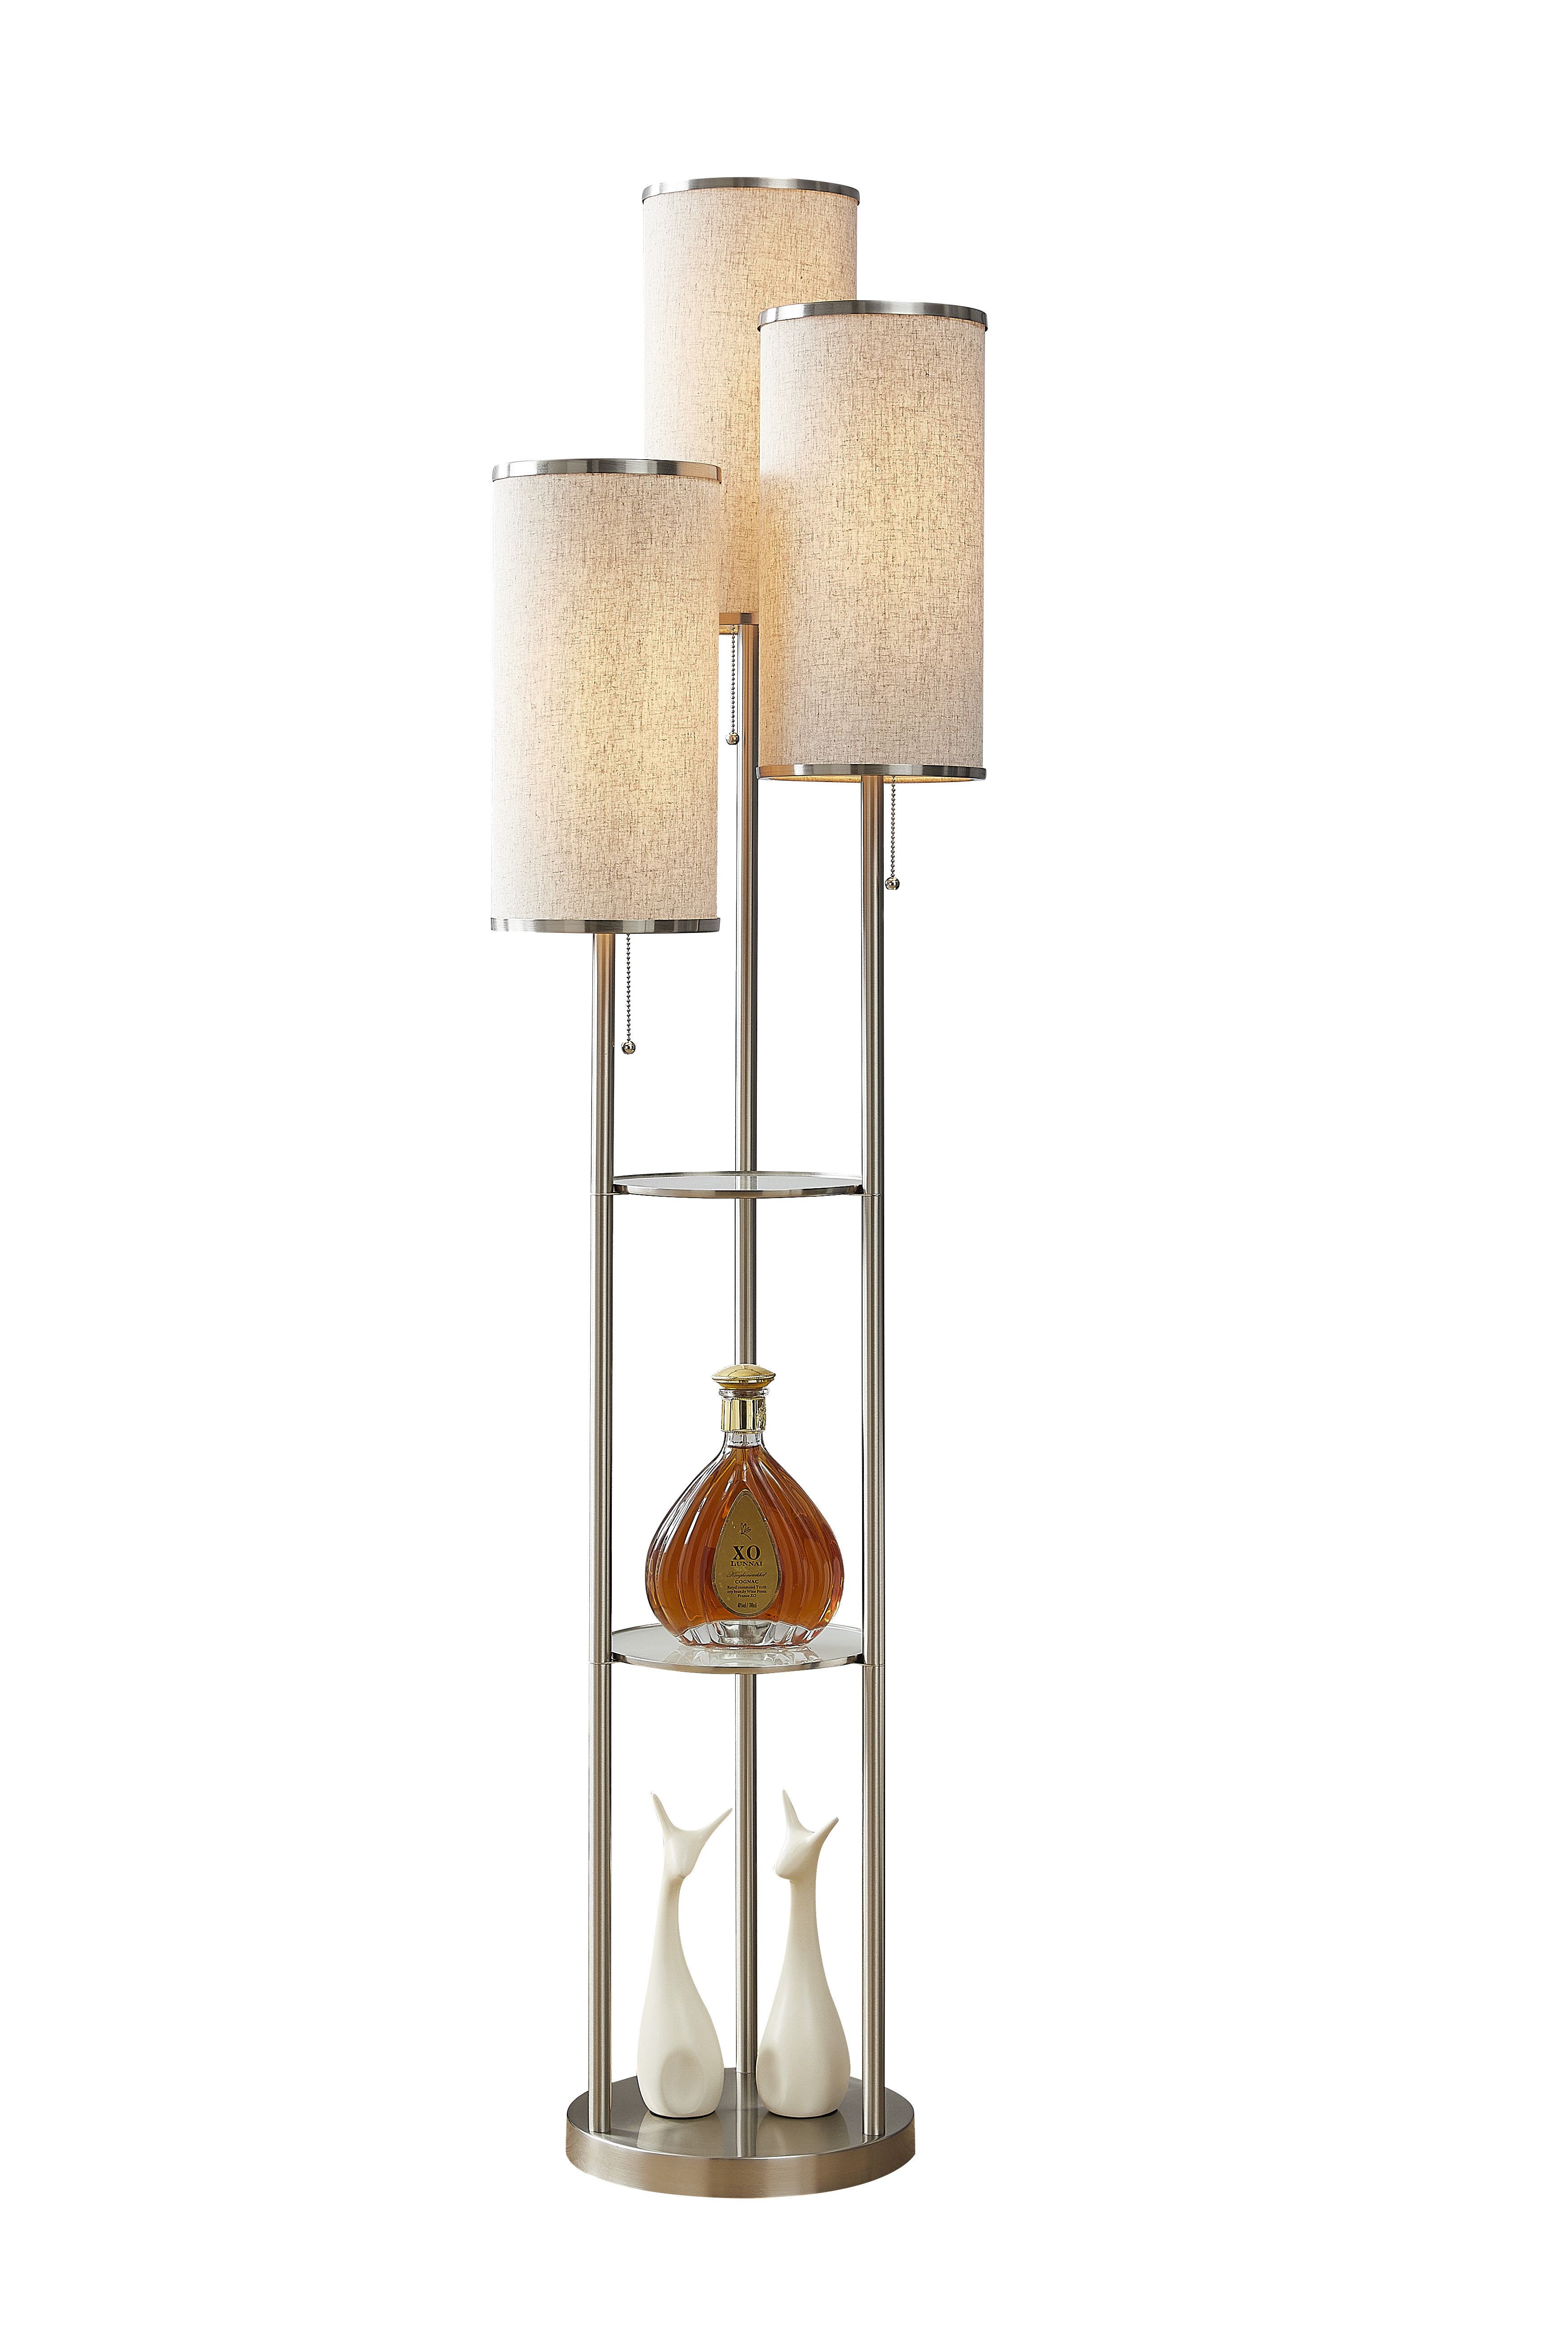 Zaire 66 Tri Light Shelf Floor Lamp intended for size 3483 X 5224